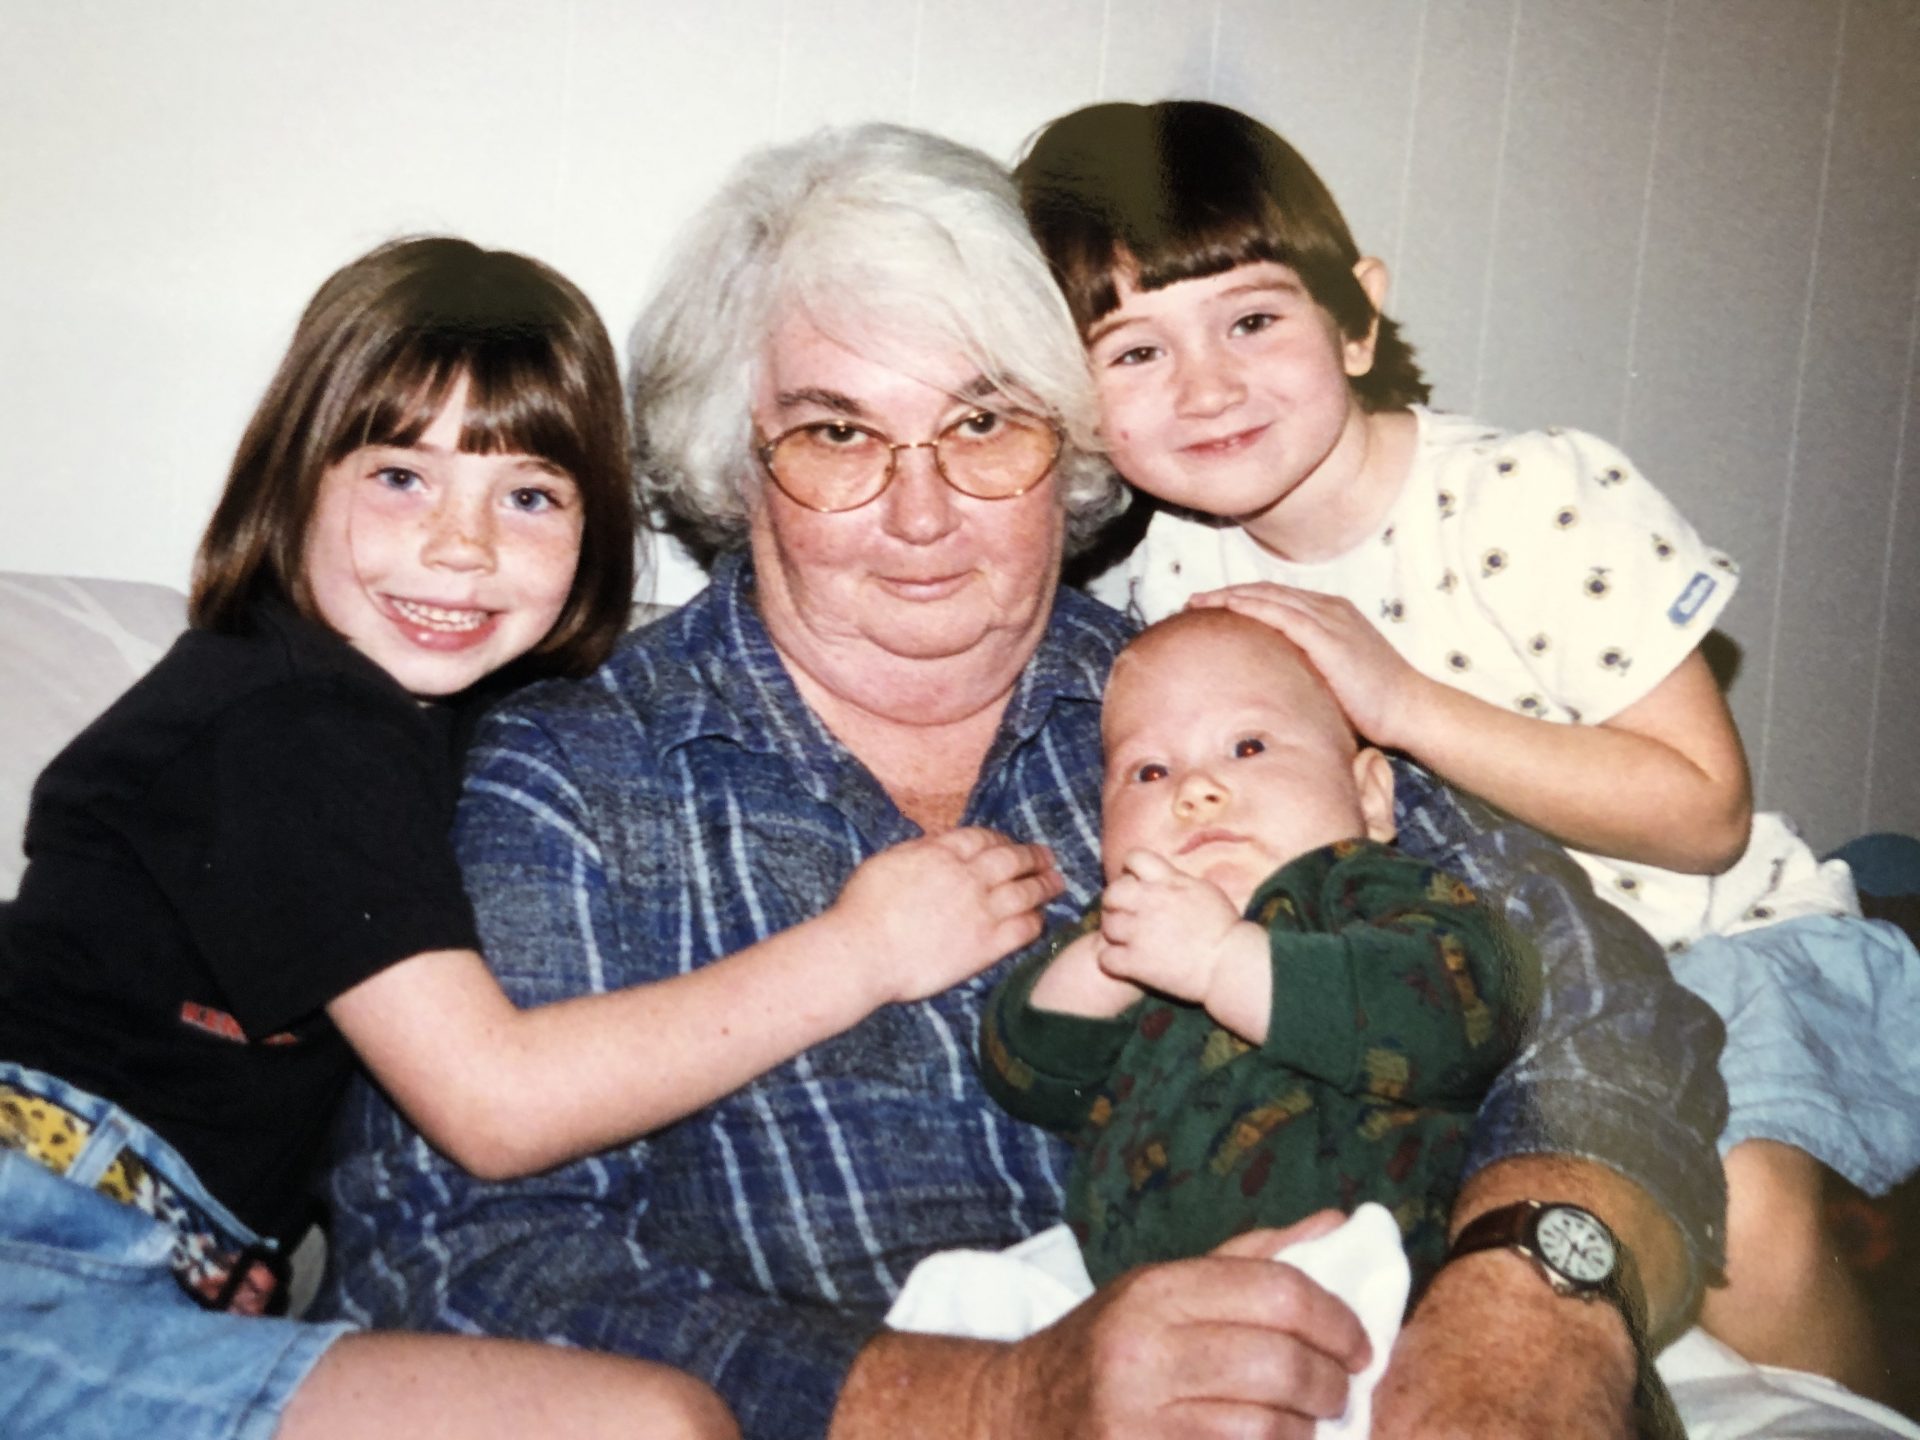 Mom and 3 grandchildren - Ariel, Erin and Danny